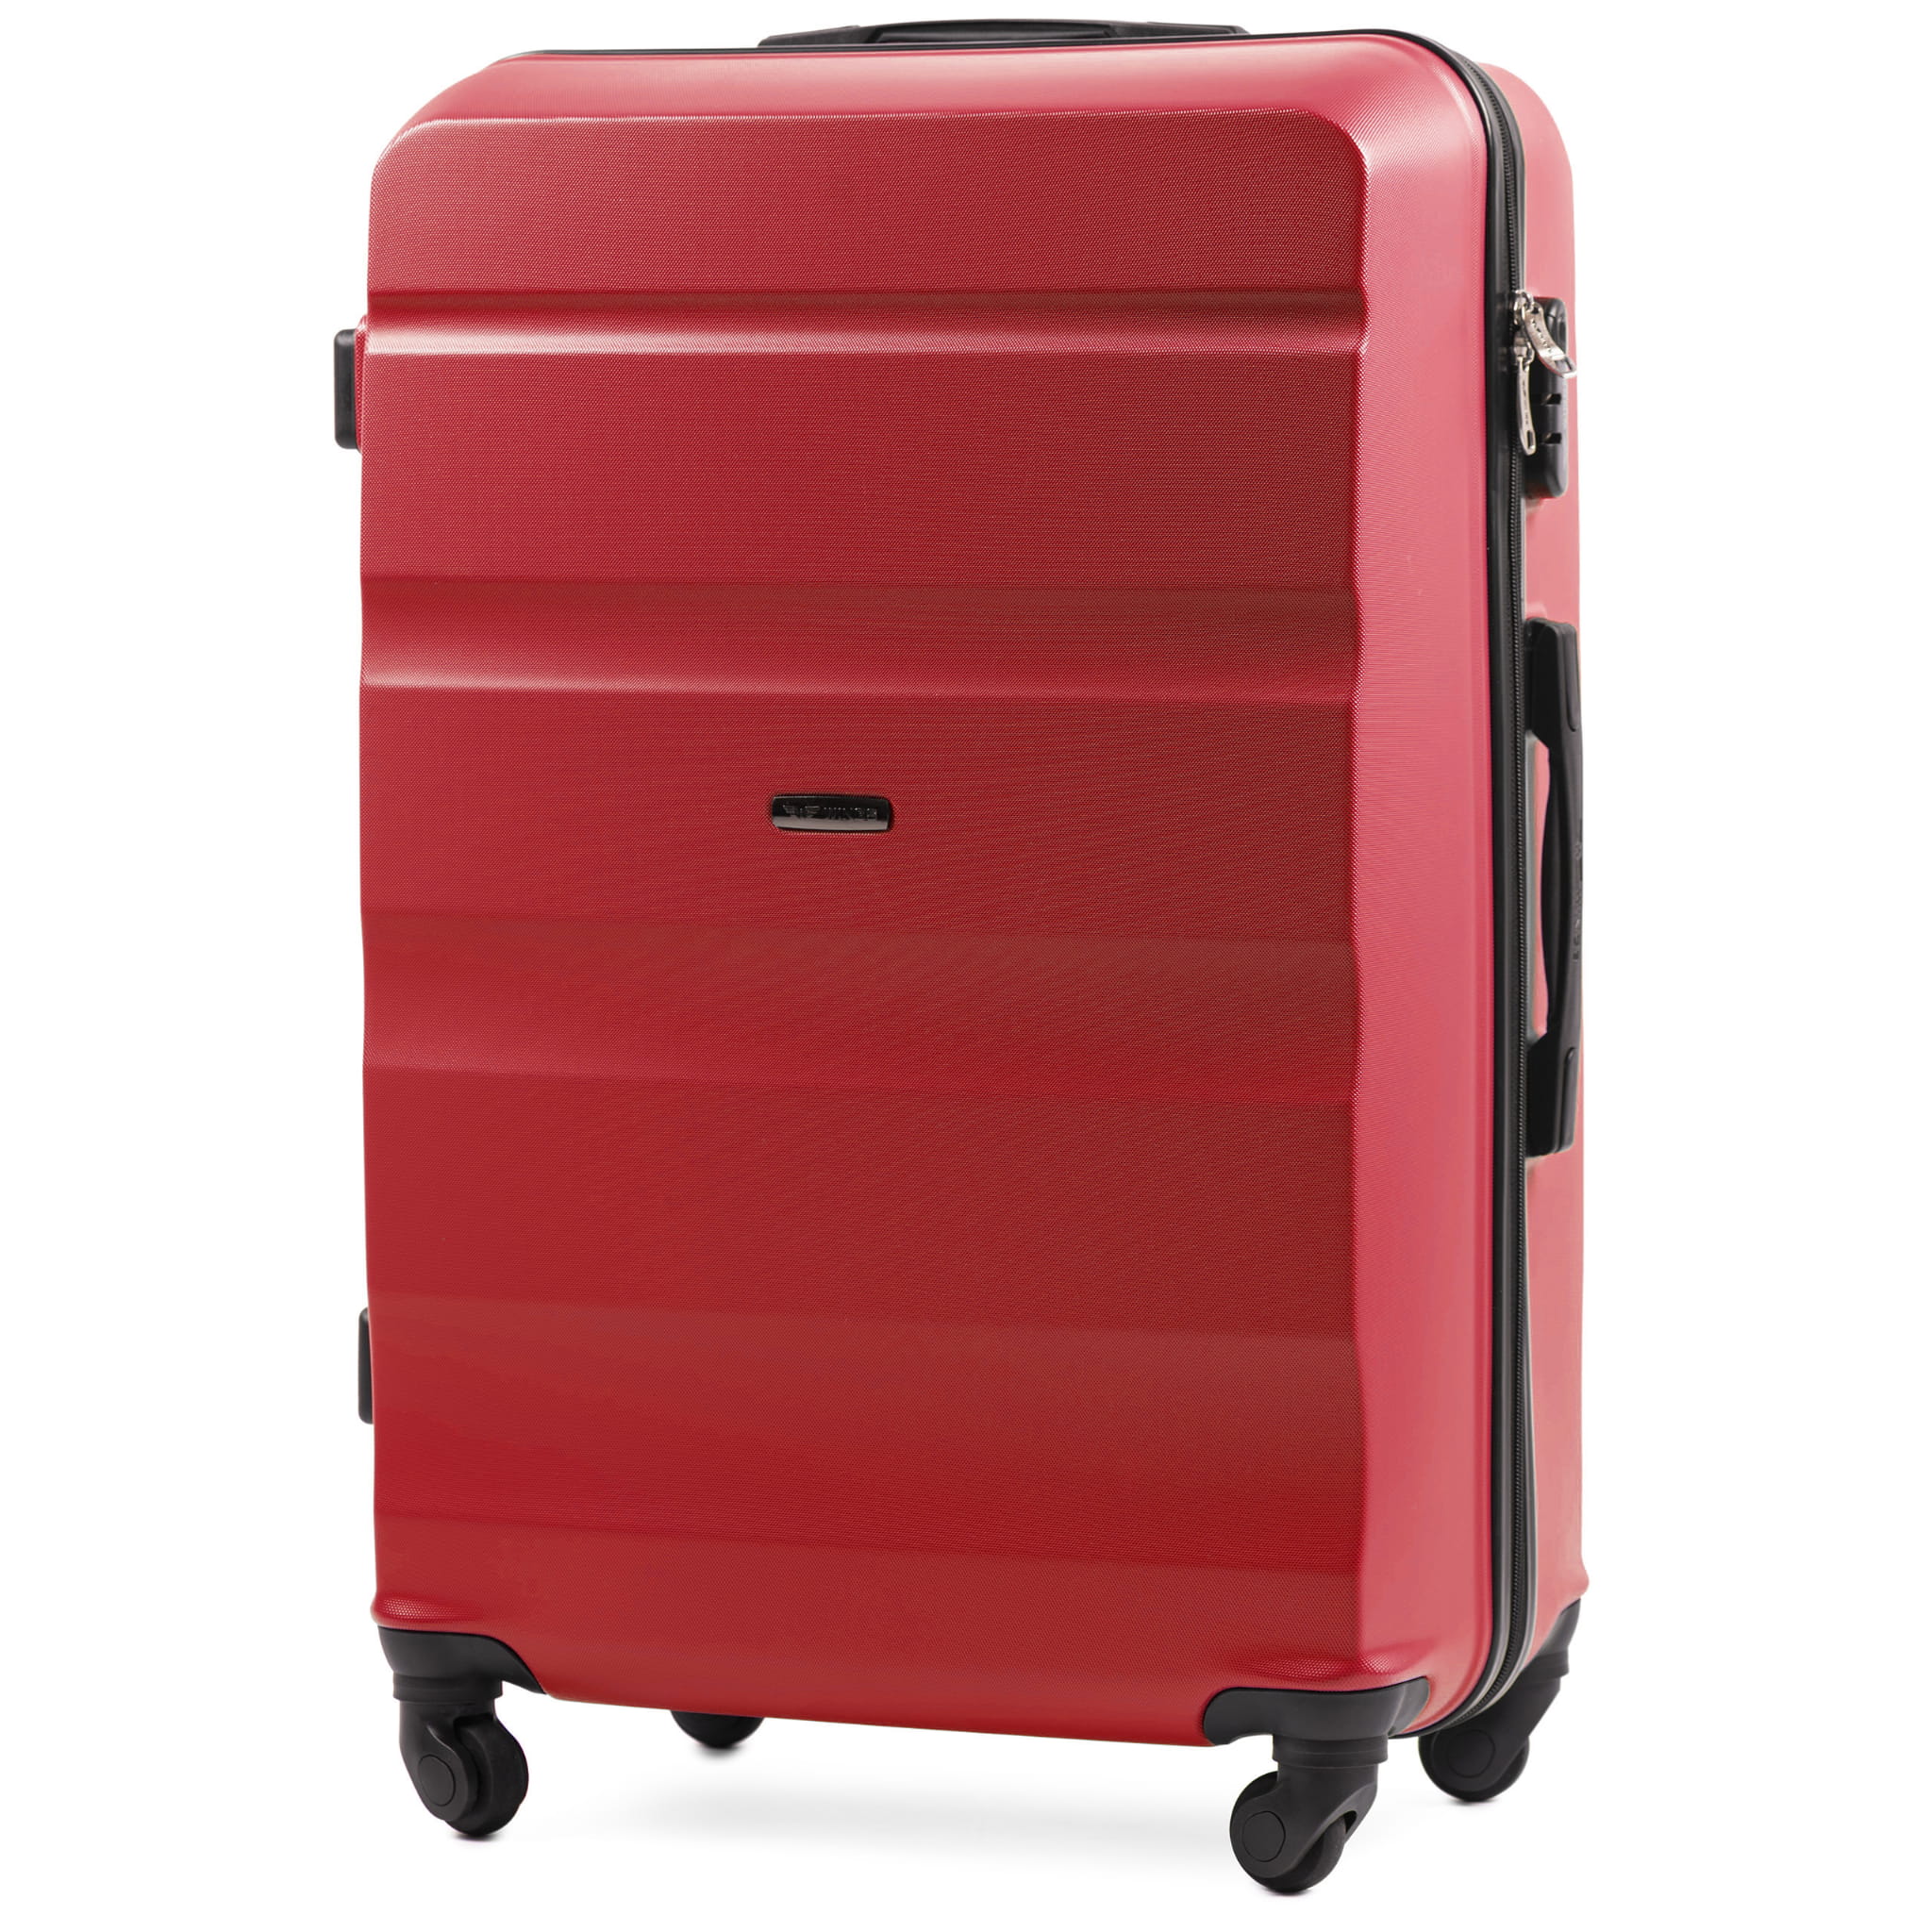 AT01-punane-suur-reisikohver-L-ABSplastik-97l-kohvrimaailm-kuljelt.jpg